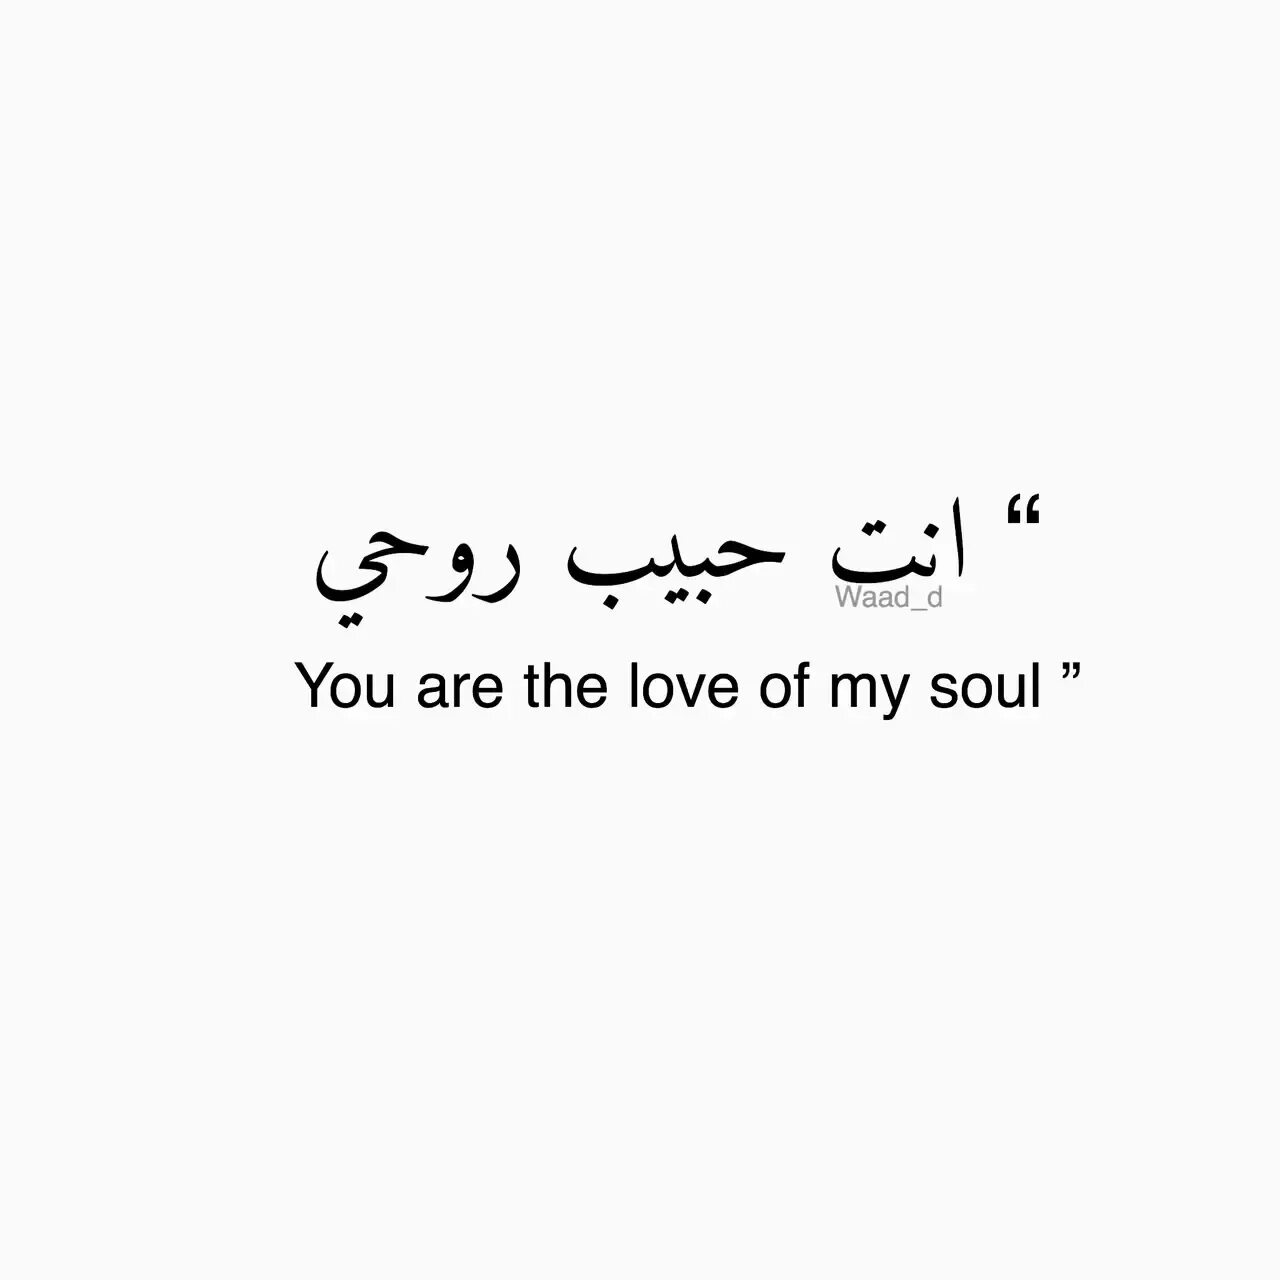 Муж на арабском языке. Красивые слова на арабском. Красивые фразы на арабском. Арабские фразы на арабском. Красивые надписи на арабском языке.